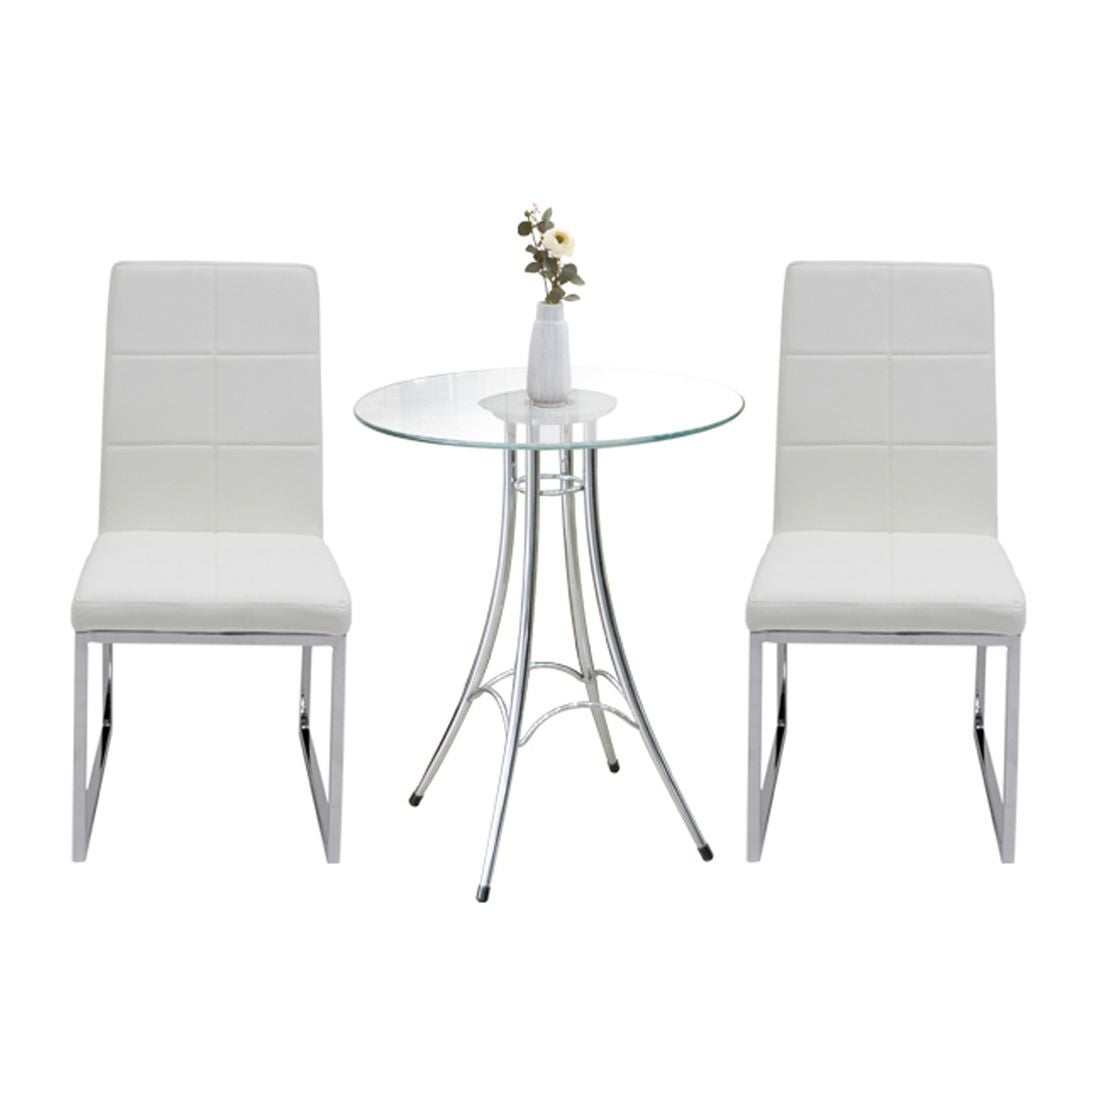 โต๊ะทานอาหาร รุ่น Ieffel สีสีเงิน-SB Design Square